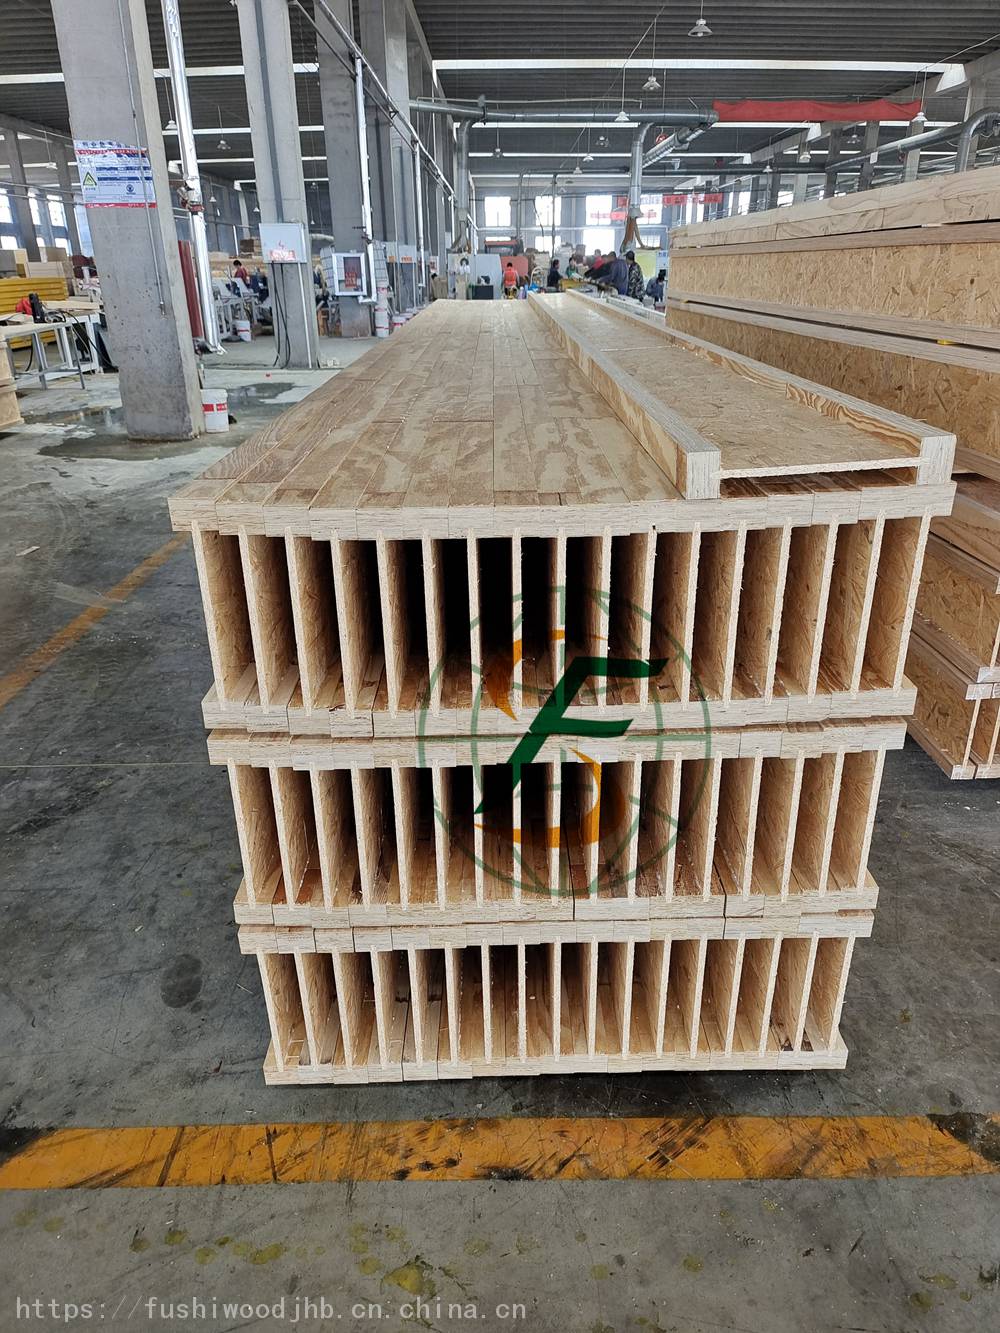 IJOISTS工厂生产12MMOSB腹板LVL两翼H300木托梁建筑房屋用